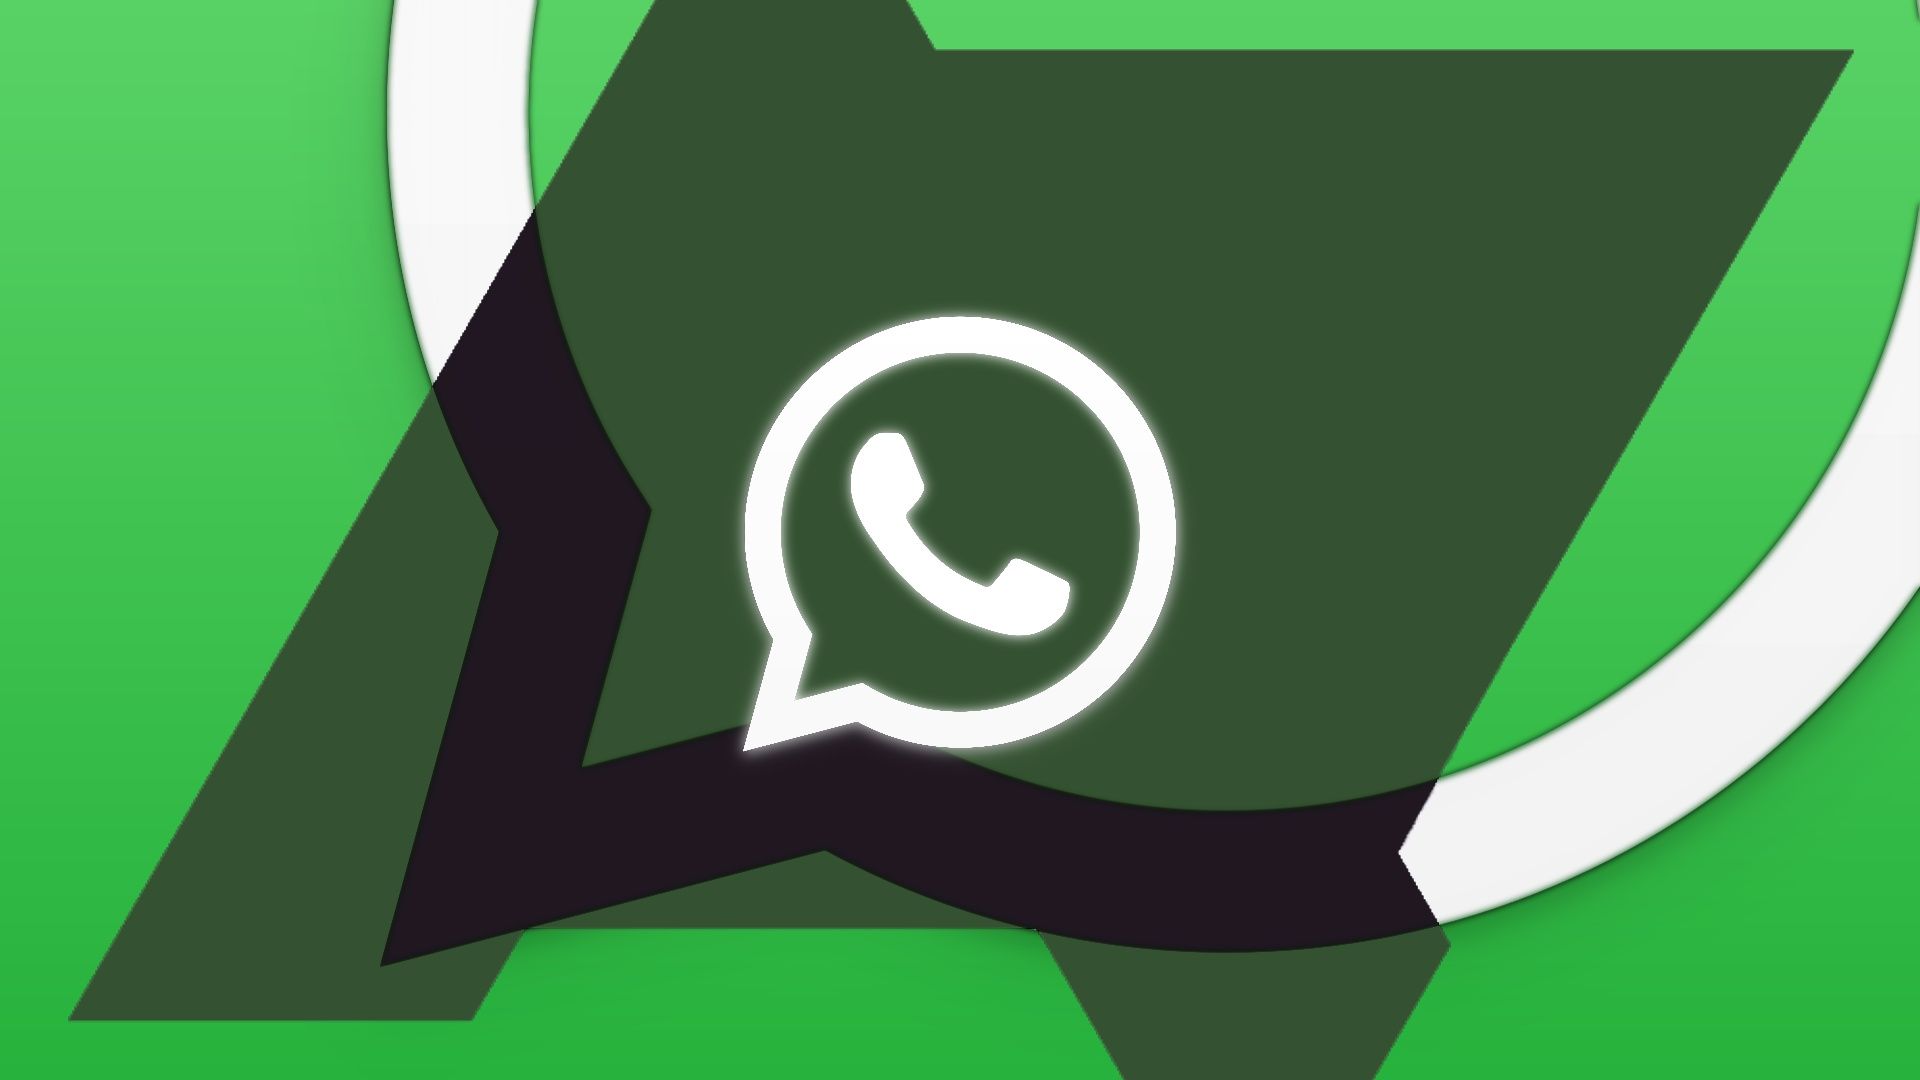 Uma imagem mostrando uma versão editada do logotipo do WhatsApp.  O ícone do WhatsApp, um balão verde com um telefone branco dentro, permanece intacto.  Uma sombra, representando o logotipo do Android Police, é sutilmente incorporada entre o ícone do WhatsApp e o balão de fala. 